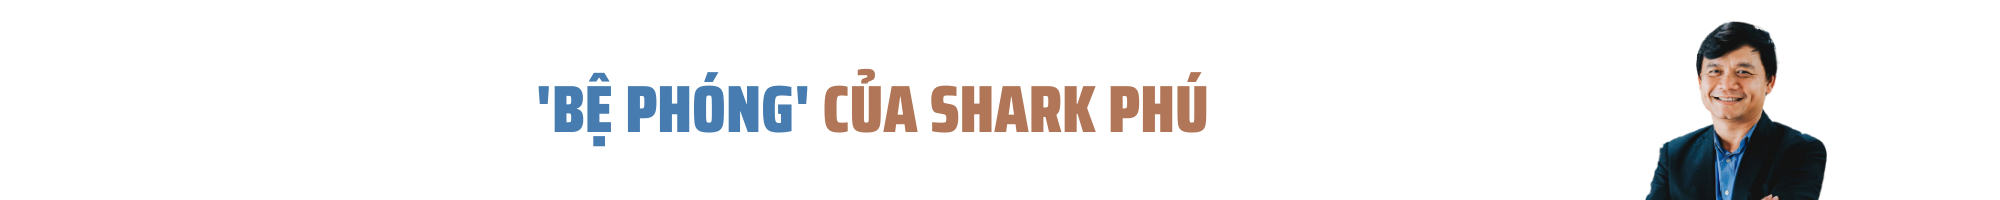 [Hồ sơ doanh nhân]: Lộ “gót chân asin” của Shark Phú - Ảnh 2.